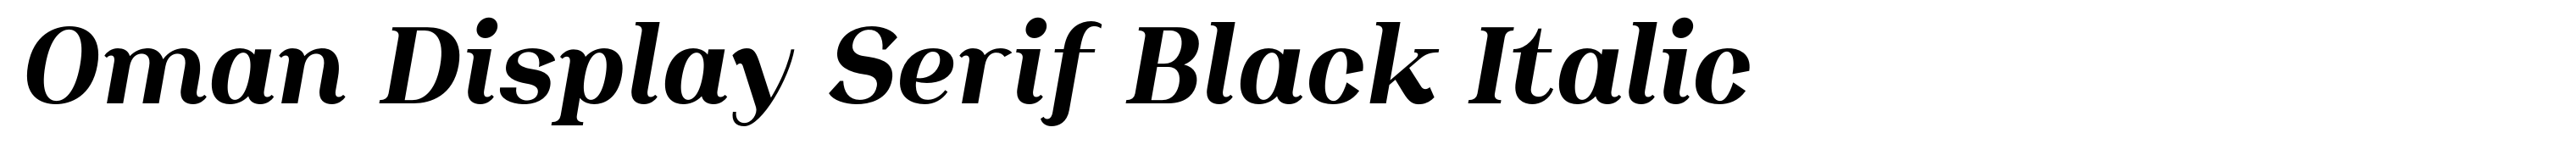 Oman Display Serif Black Italic